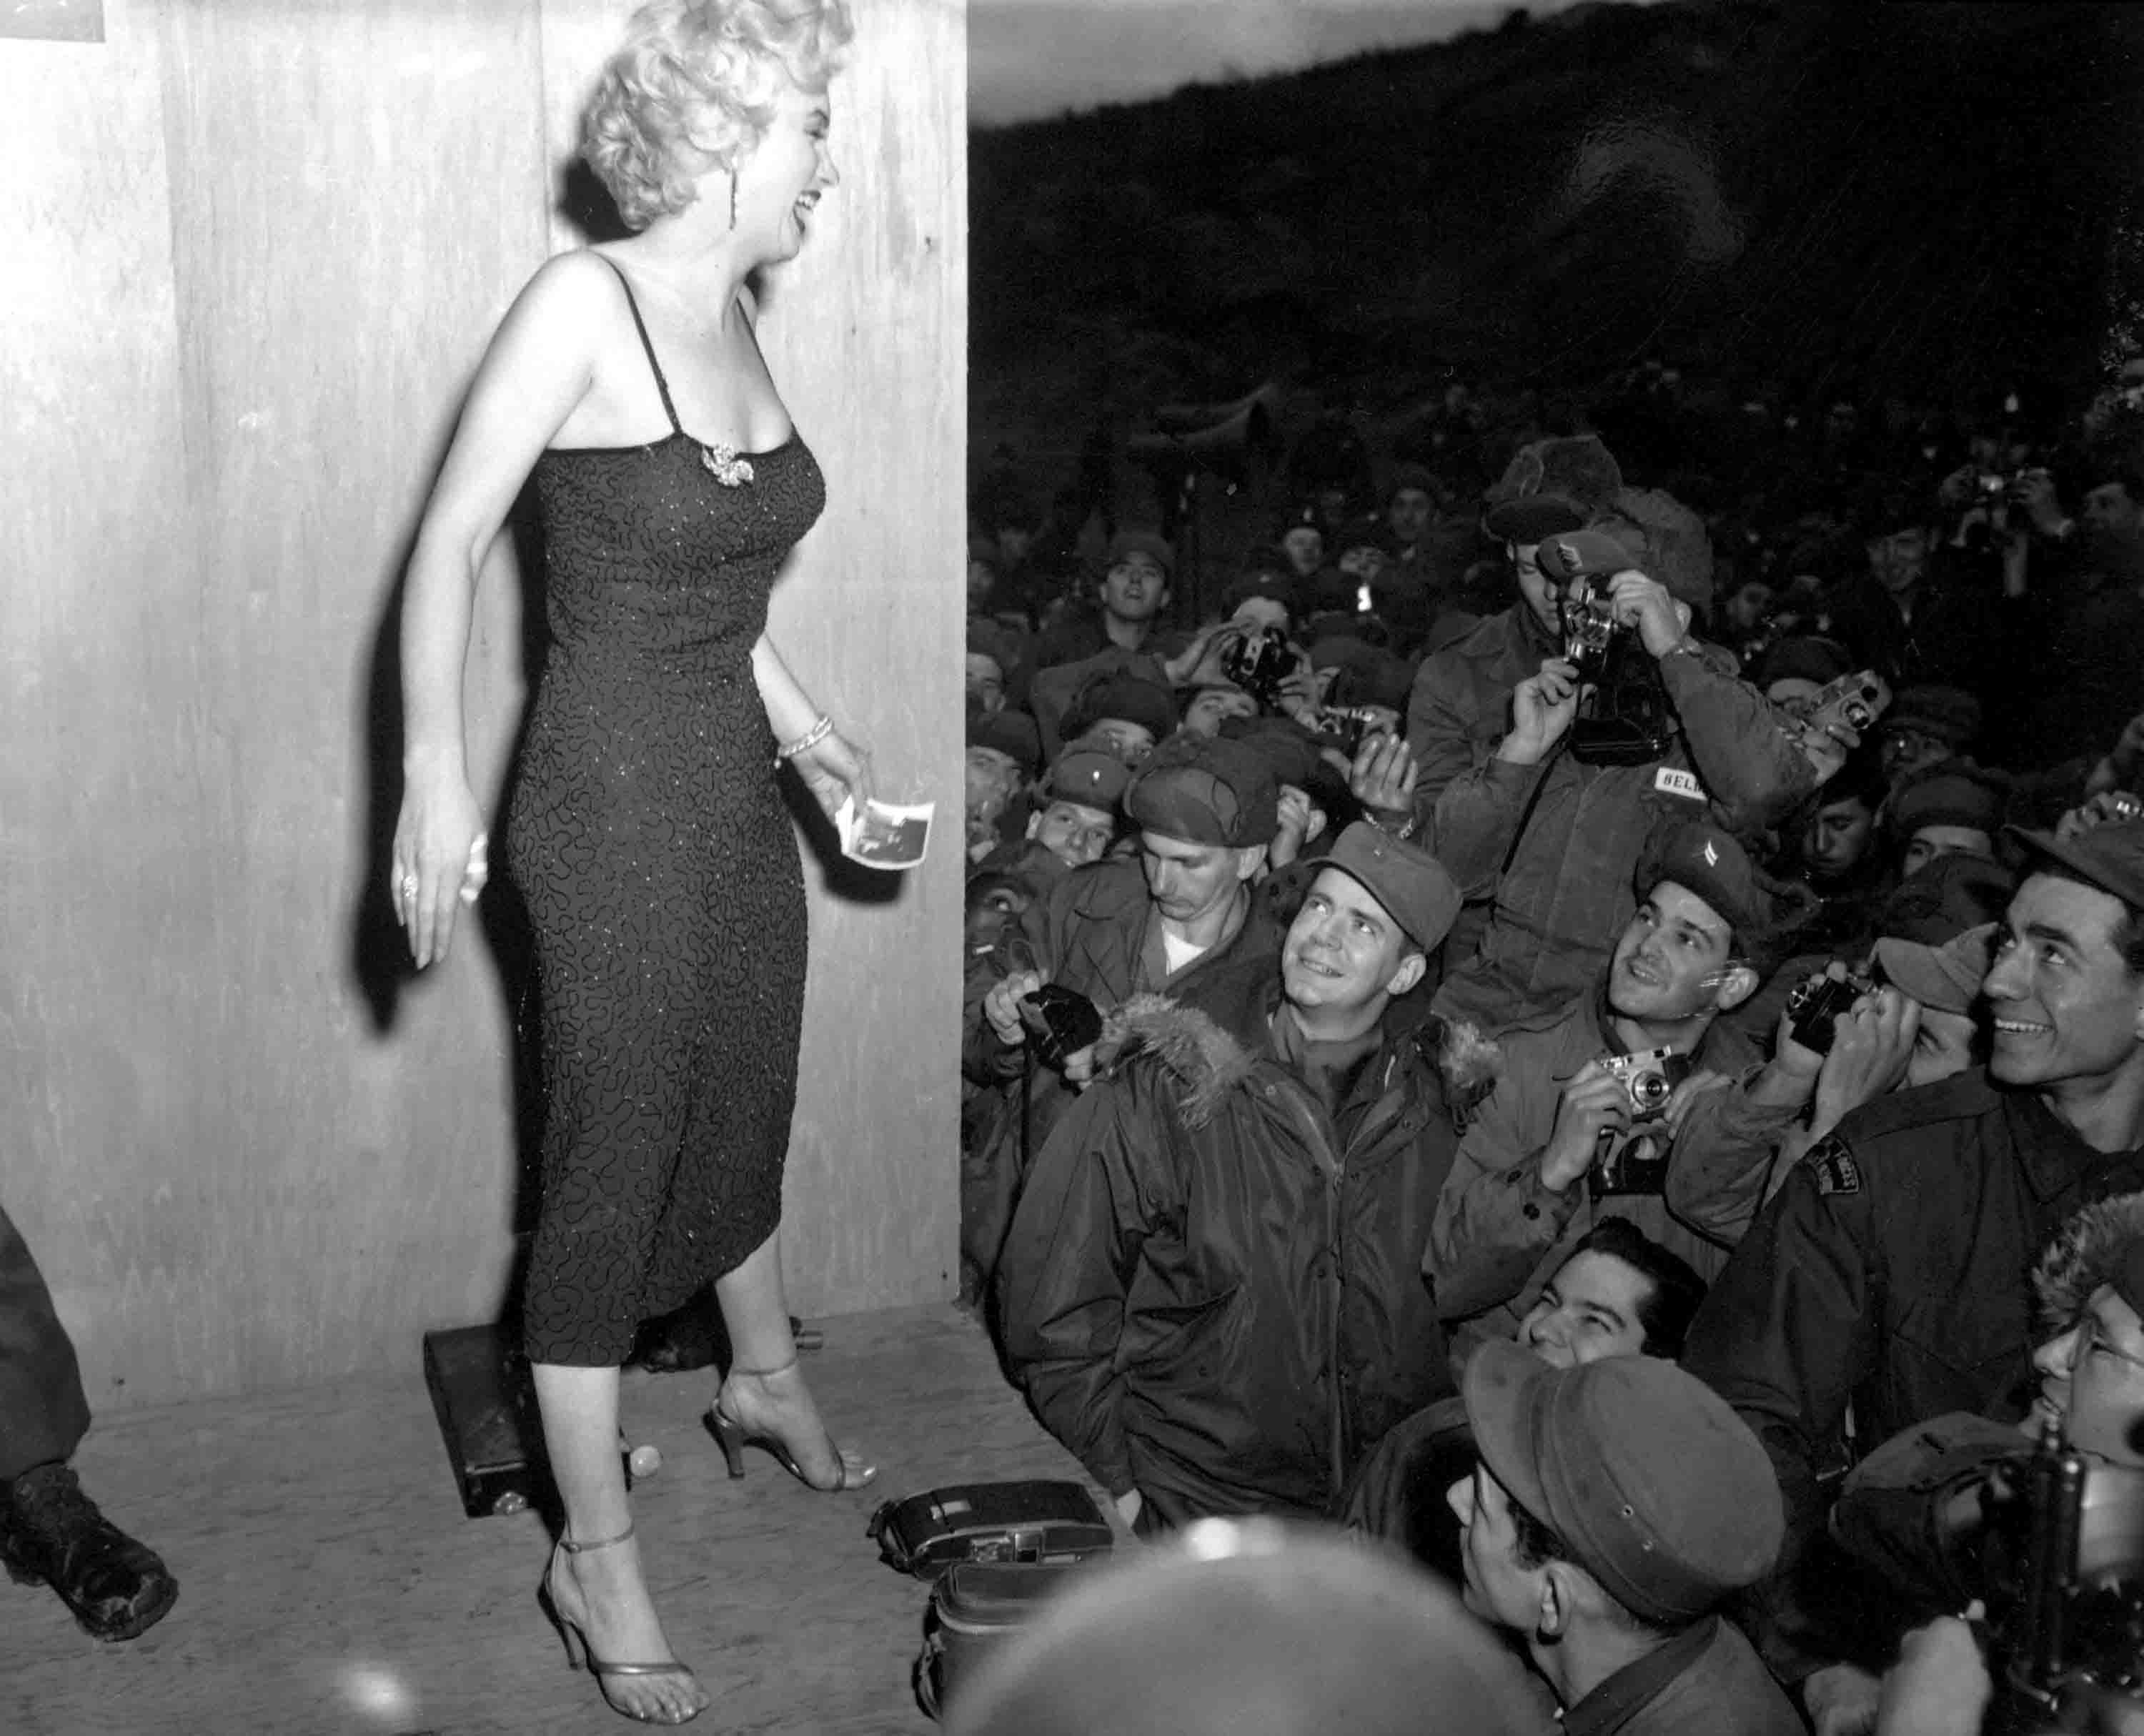 10 coisas que pouca gente sabe sobre Marilyn Monroe